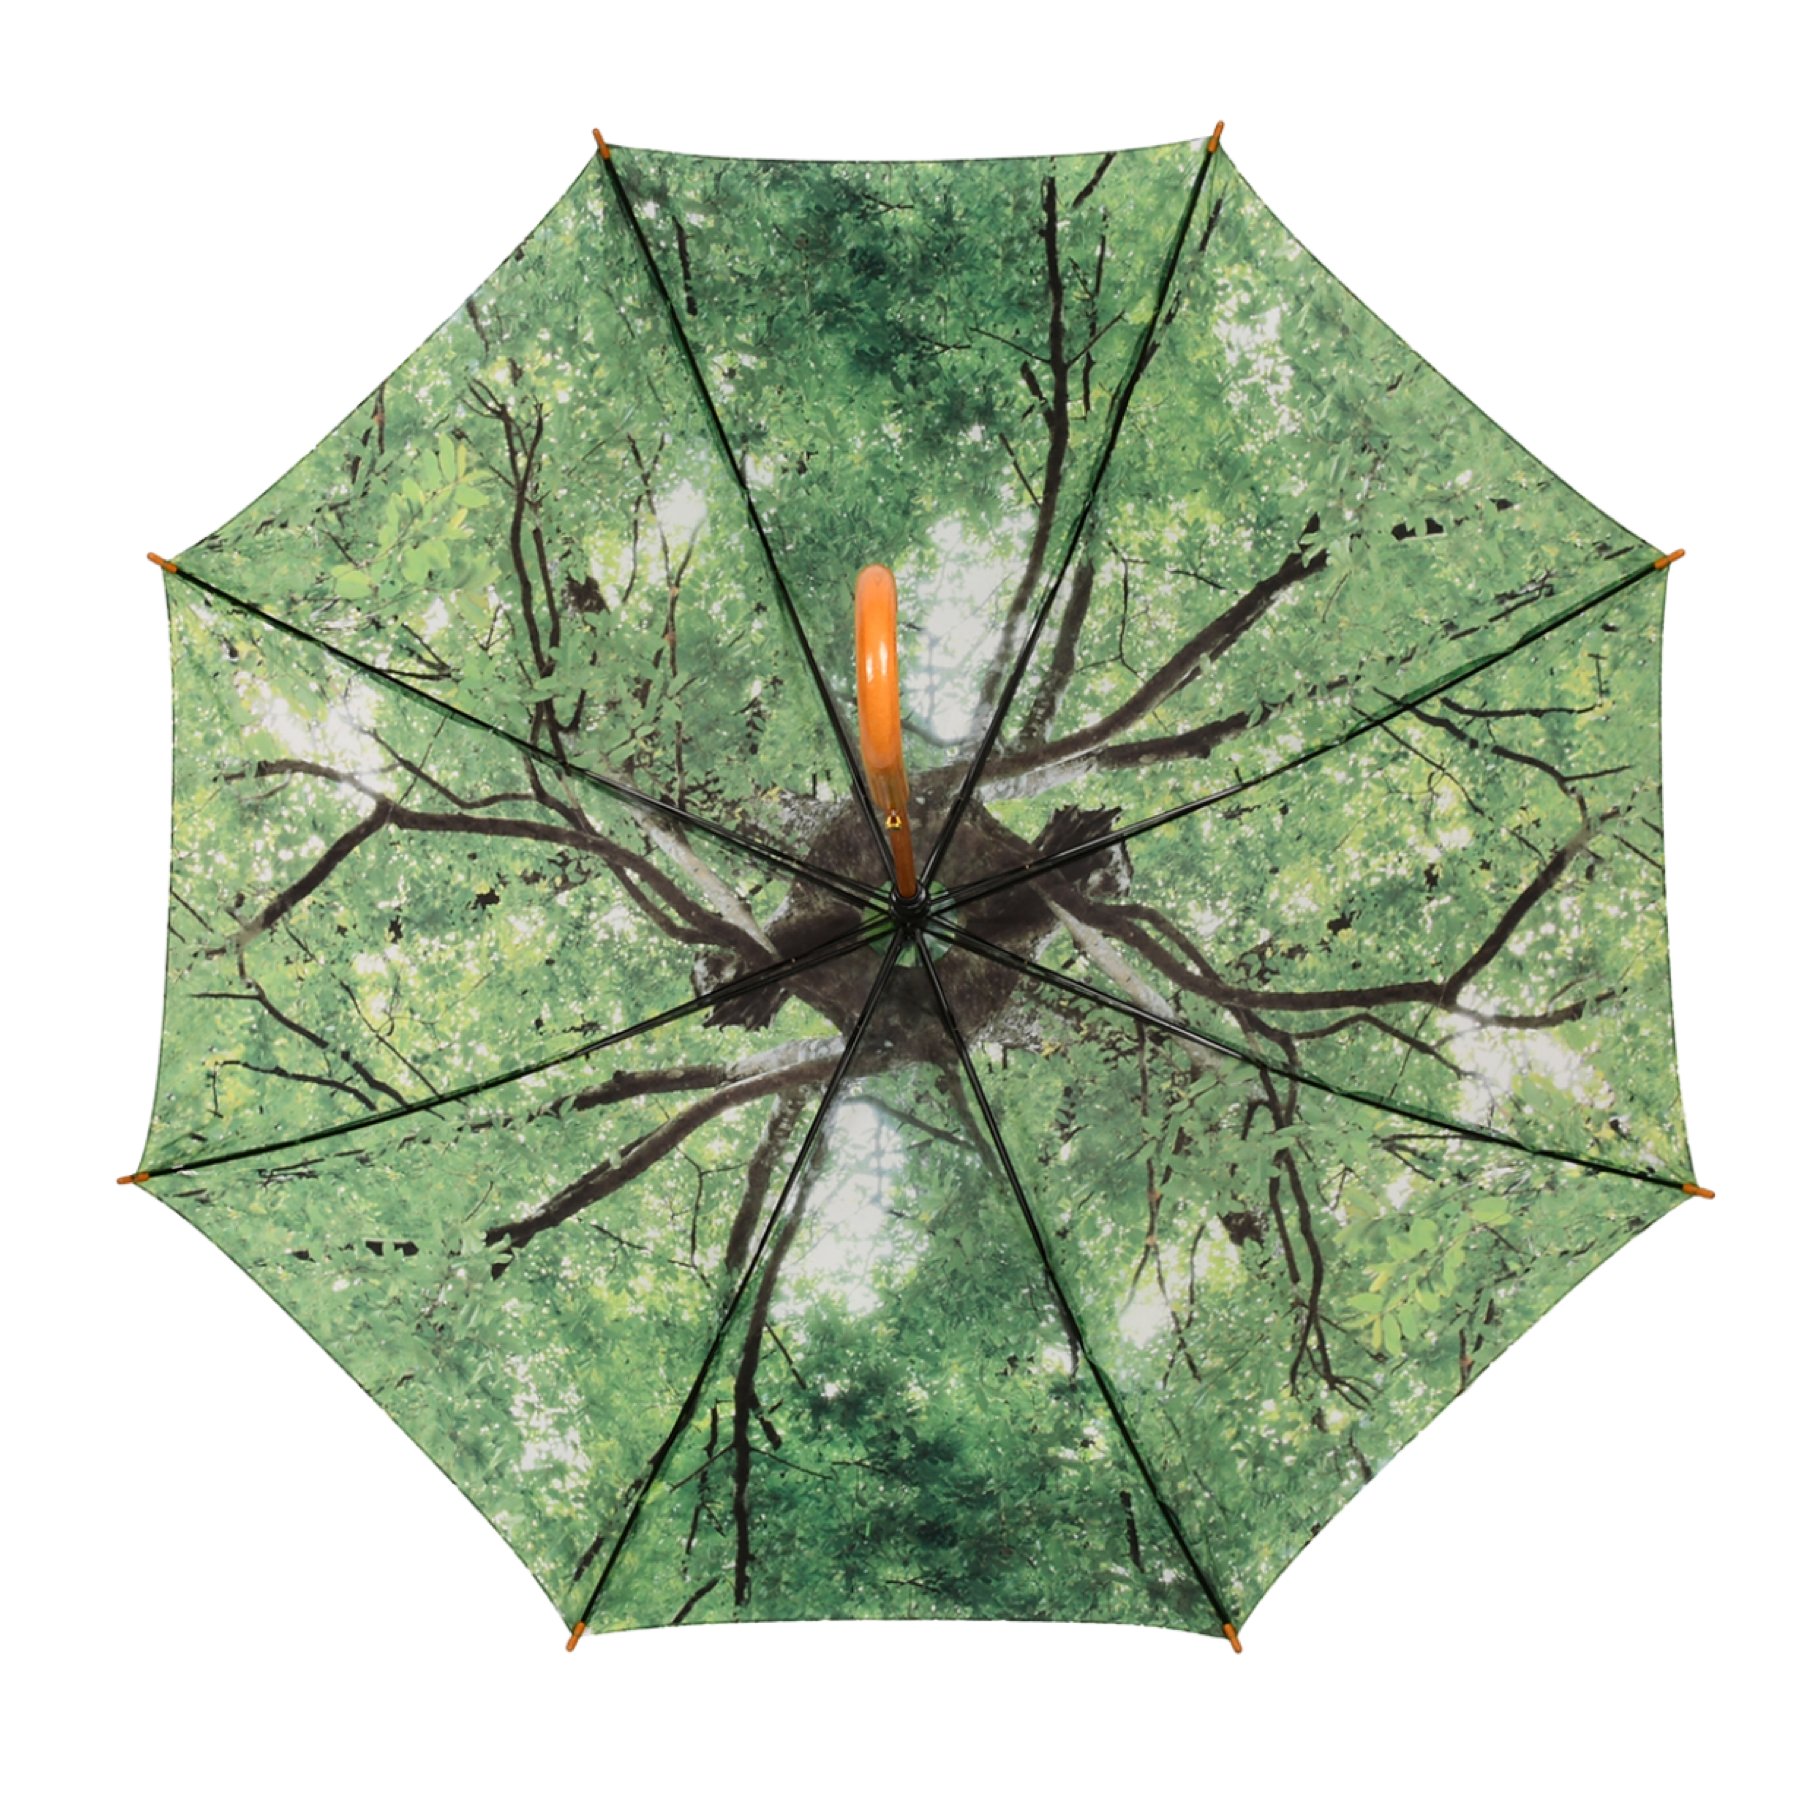 TP339 parapluie cime d arbres esschert design chez ugo et lea (3)